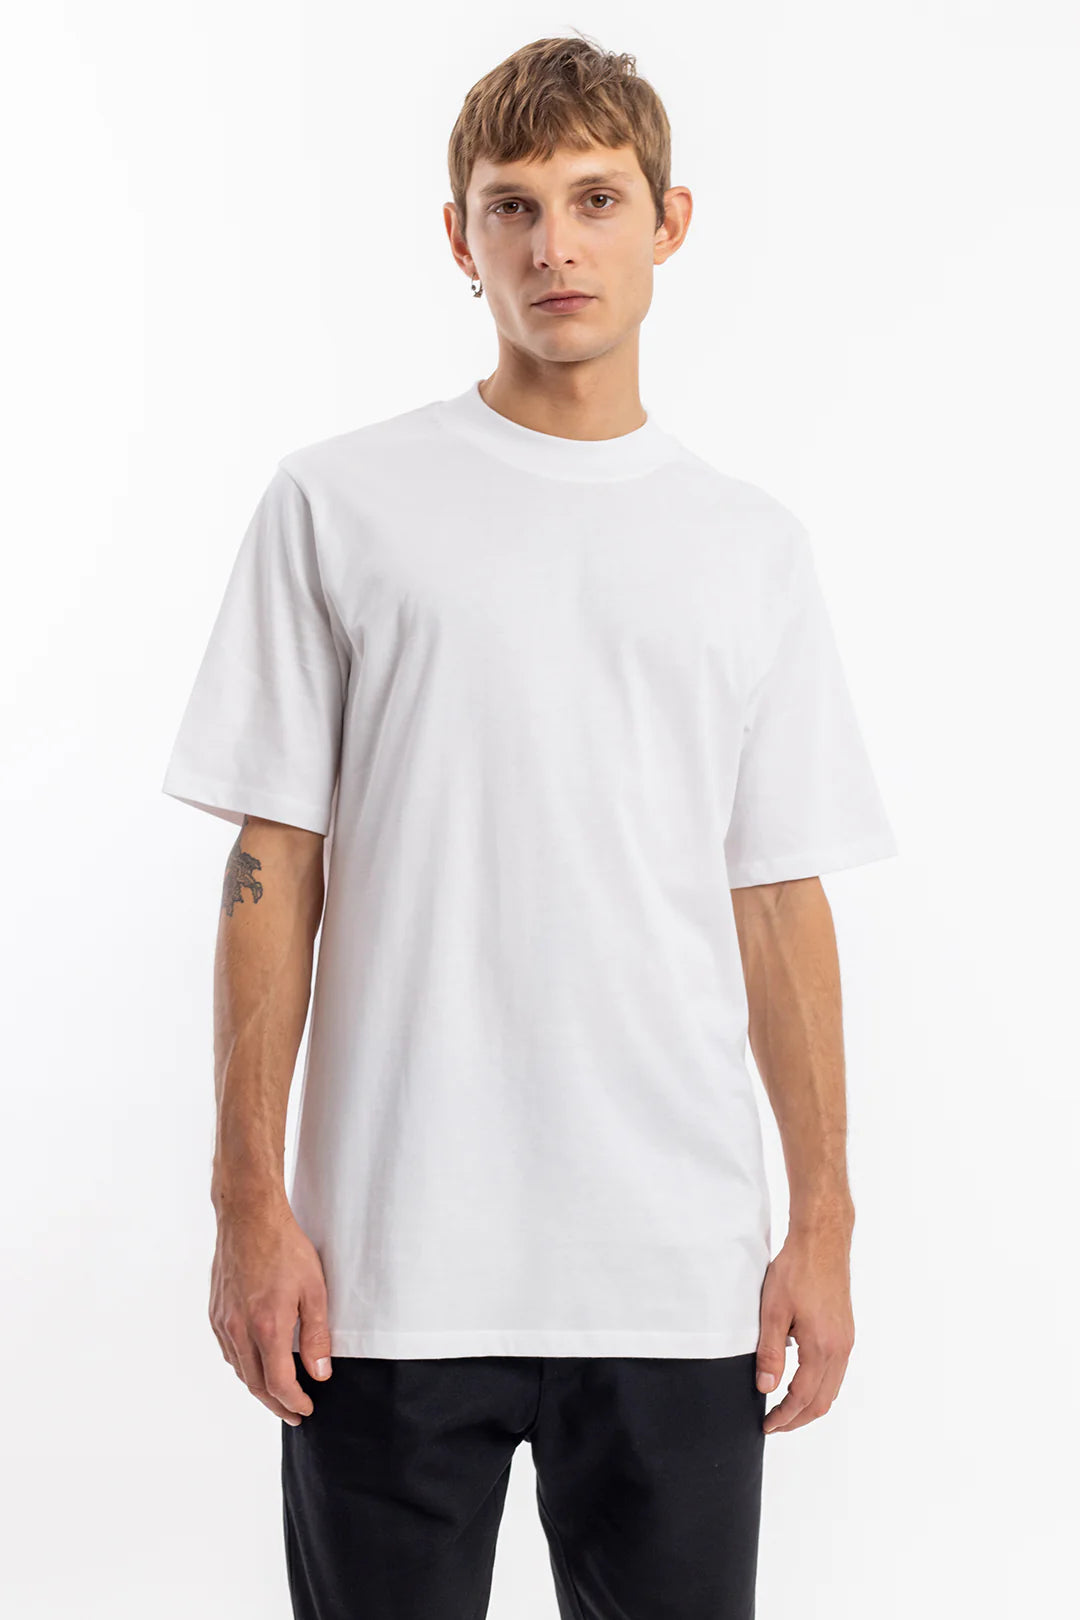 T-Shirt mit breitem Kragen Bio Baumwolle - Weiß - Unisex